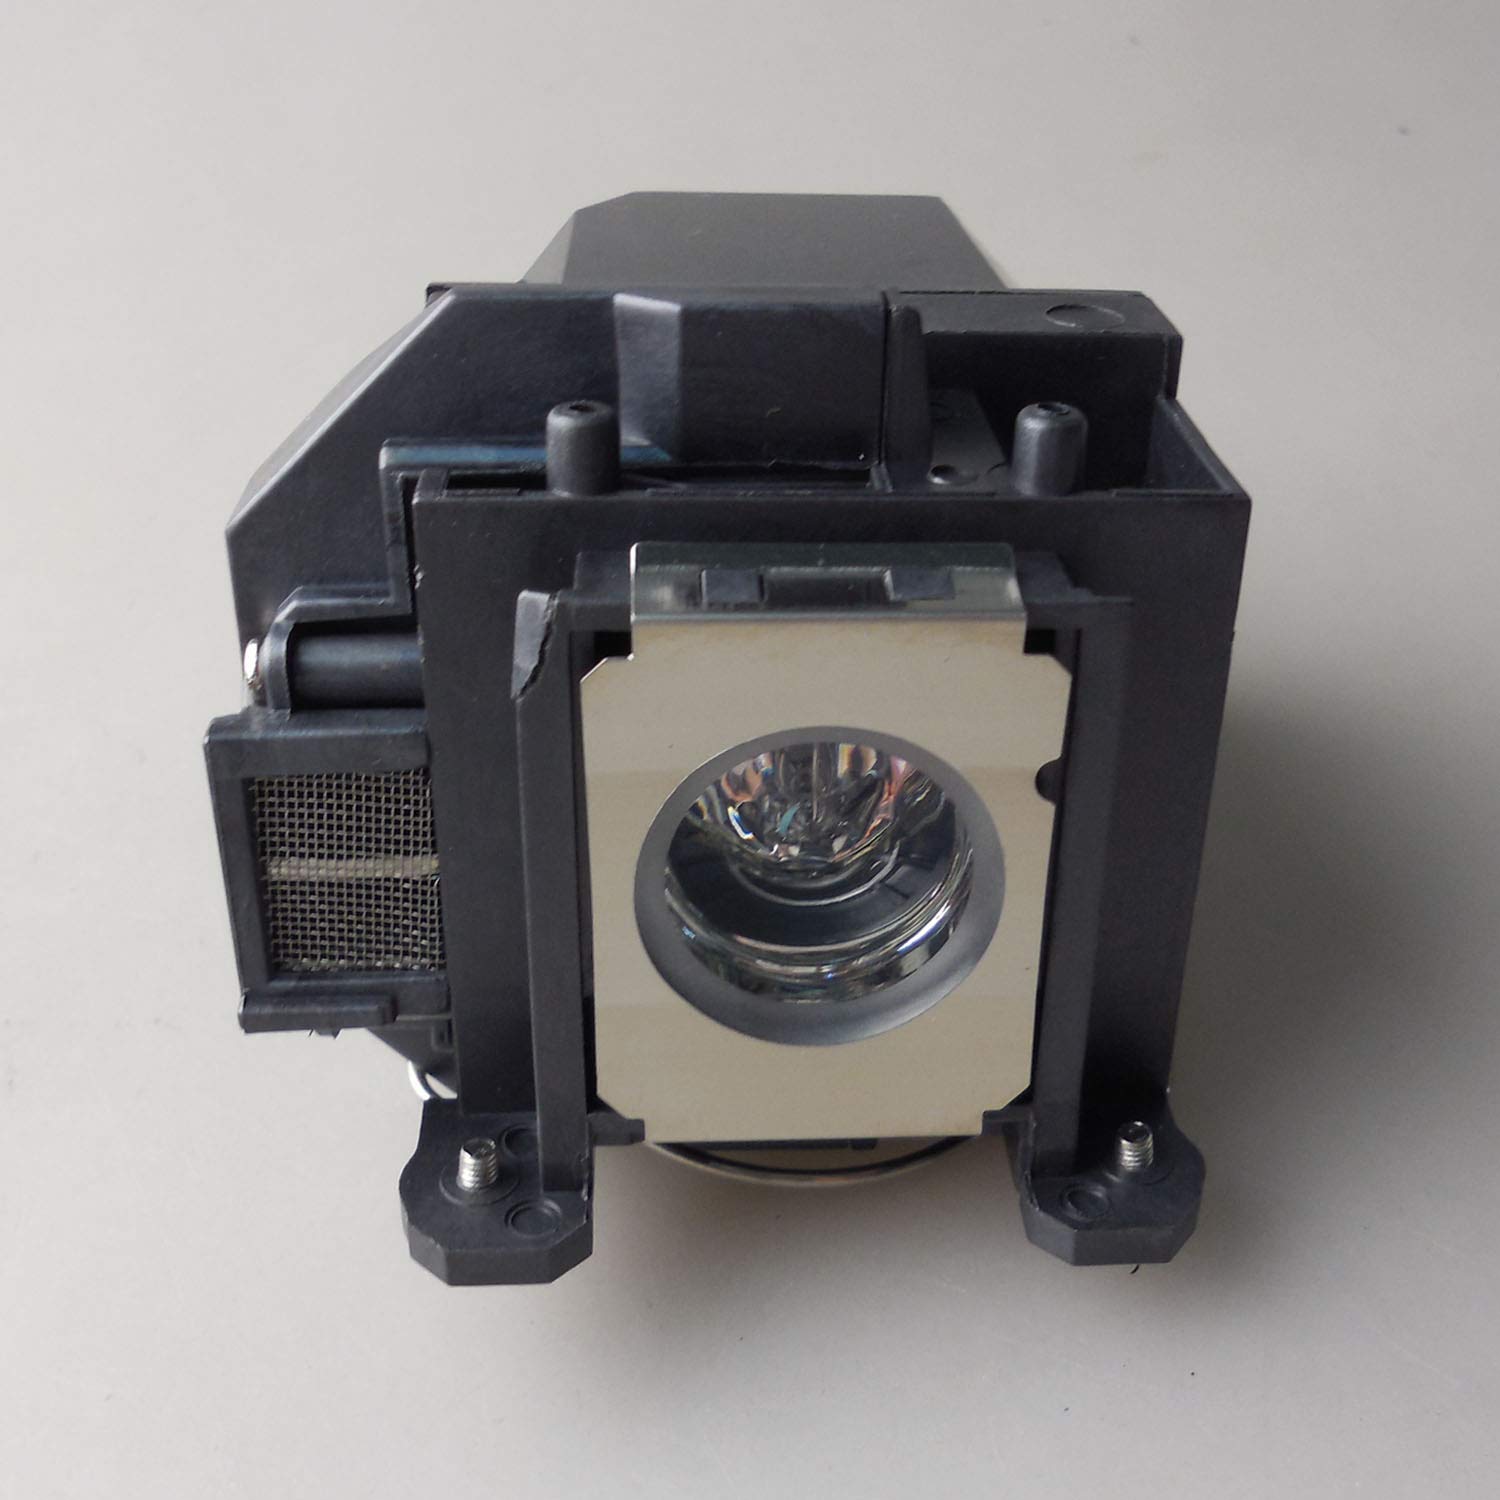 Supermait EP57 A++ Qualität Ersatzprojektorlampe mit Gehäuse, kompatibel mit Elplp57, Fit für EB-440W / EB-450W / EB-450Wi / EB-455Wi / EB-460 / EB-460i / EB-465i EB-450We EB-460e EB-455i (MEHRWEG)